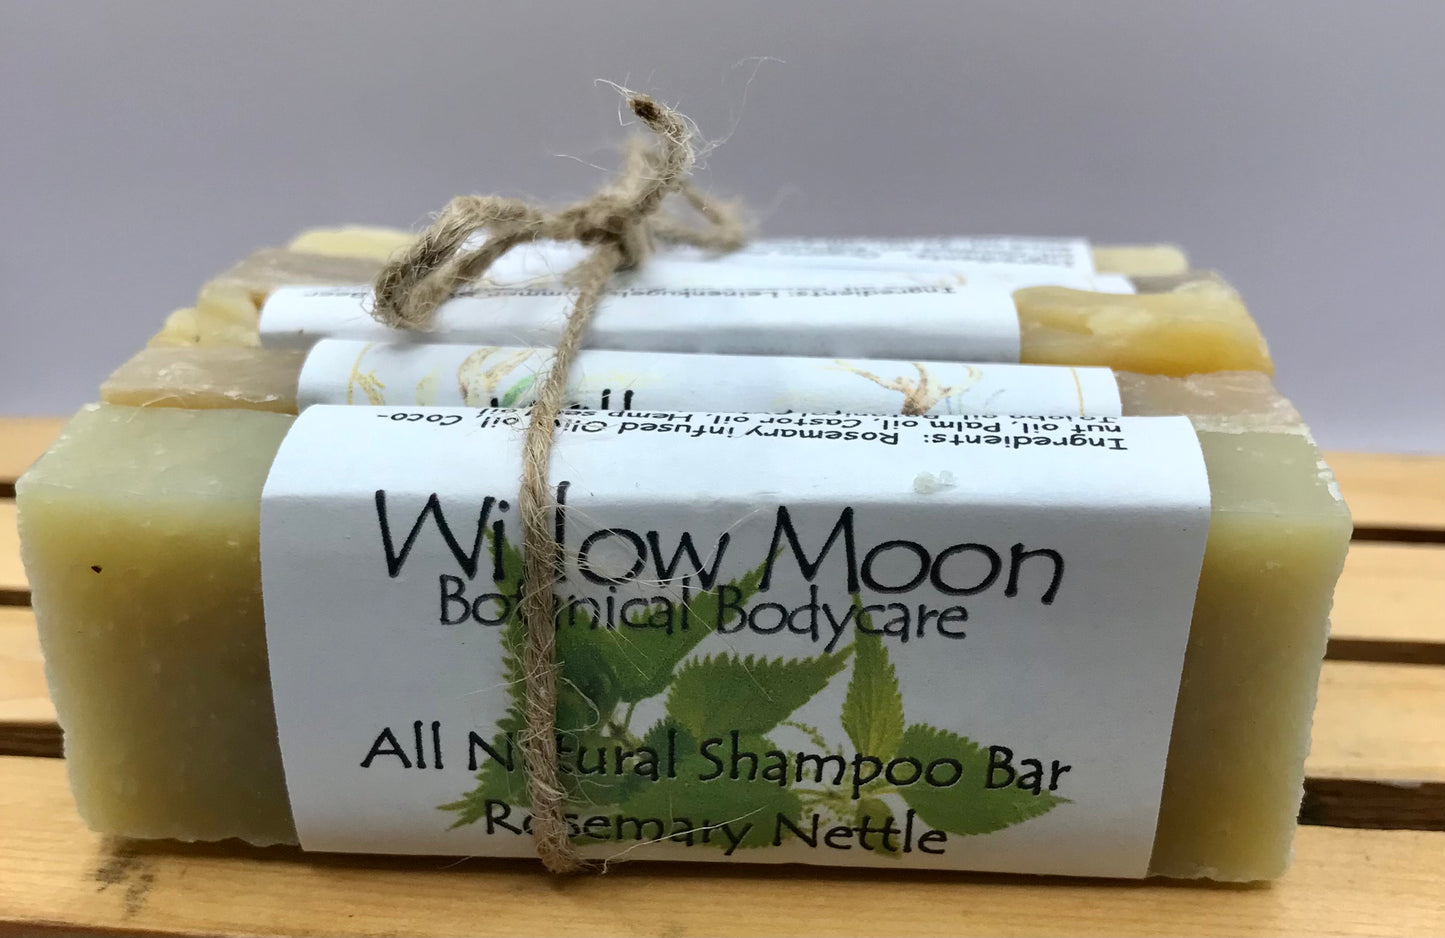 Natural moisturizing herbal shampoo bars, sampler pack, try them all!